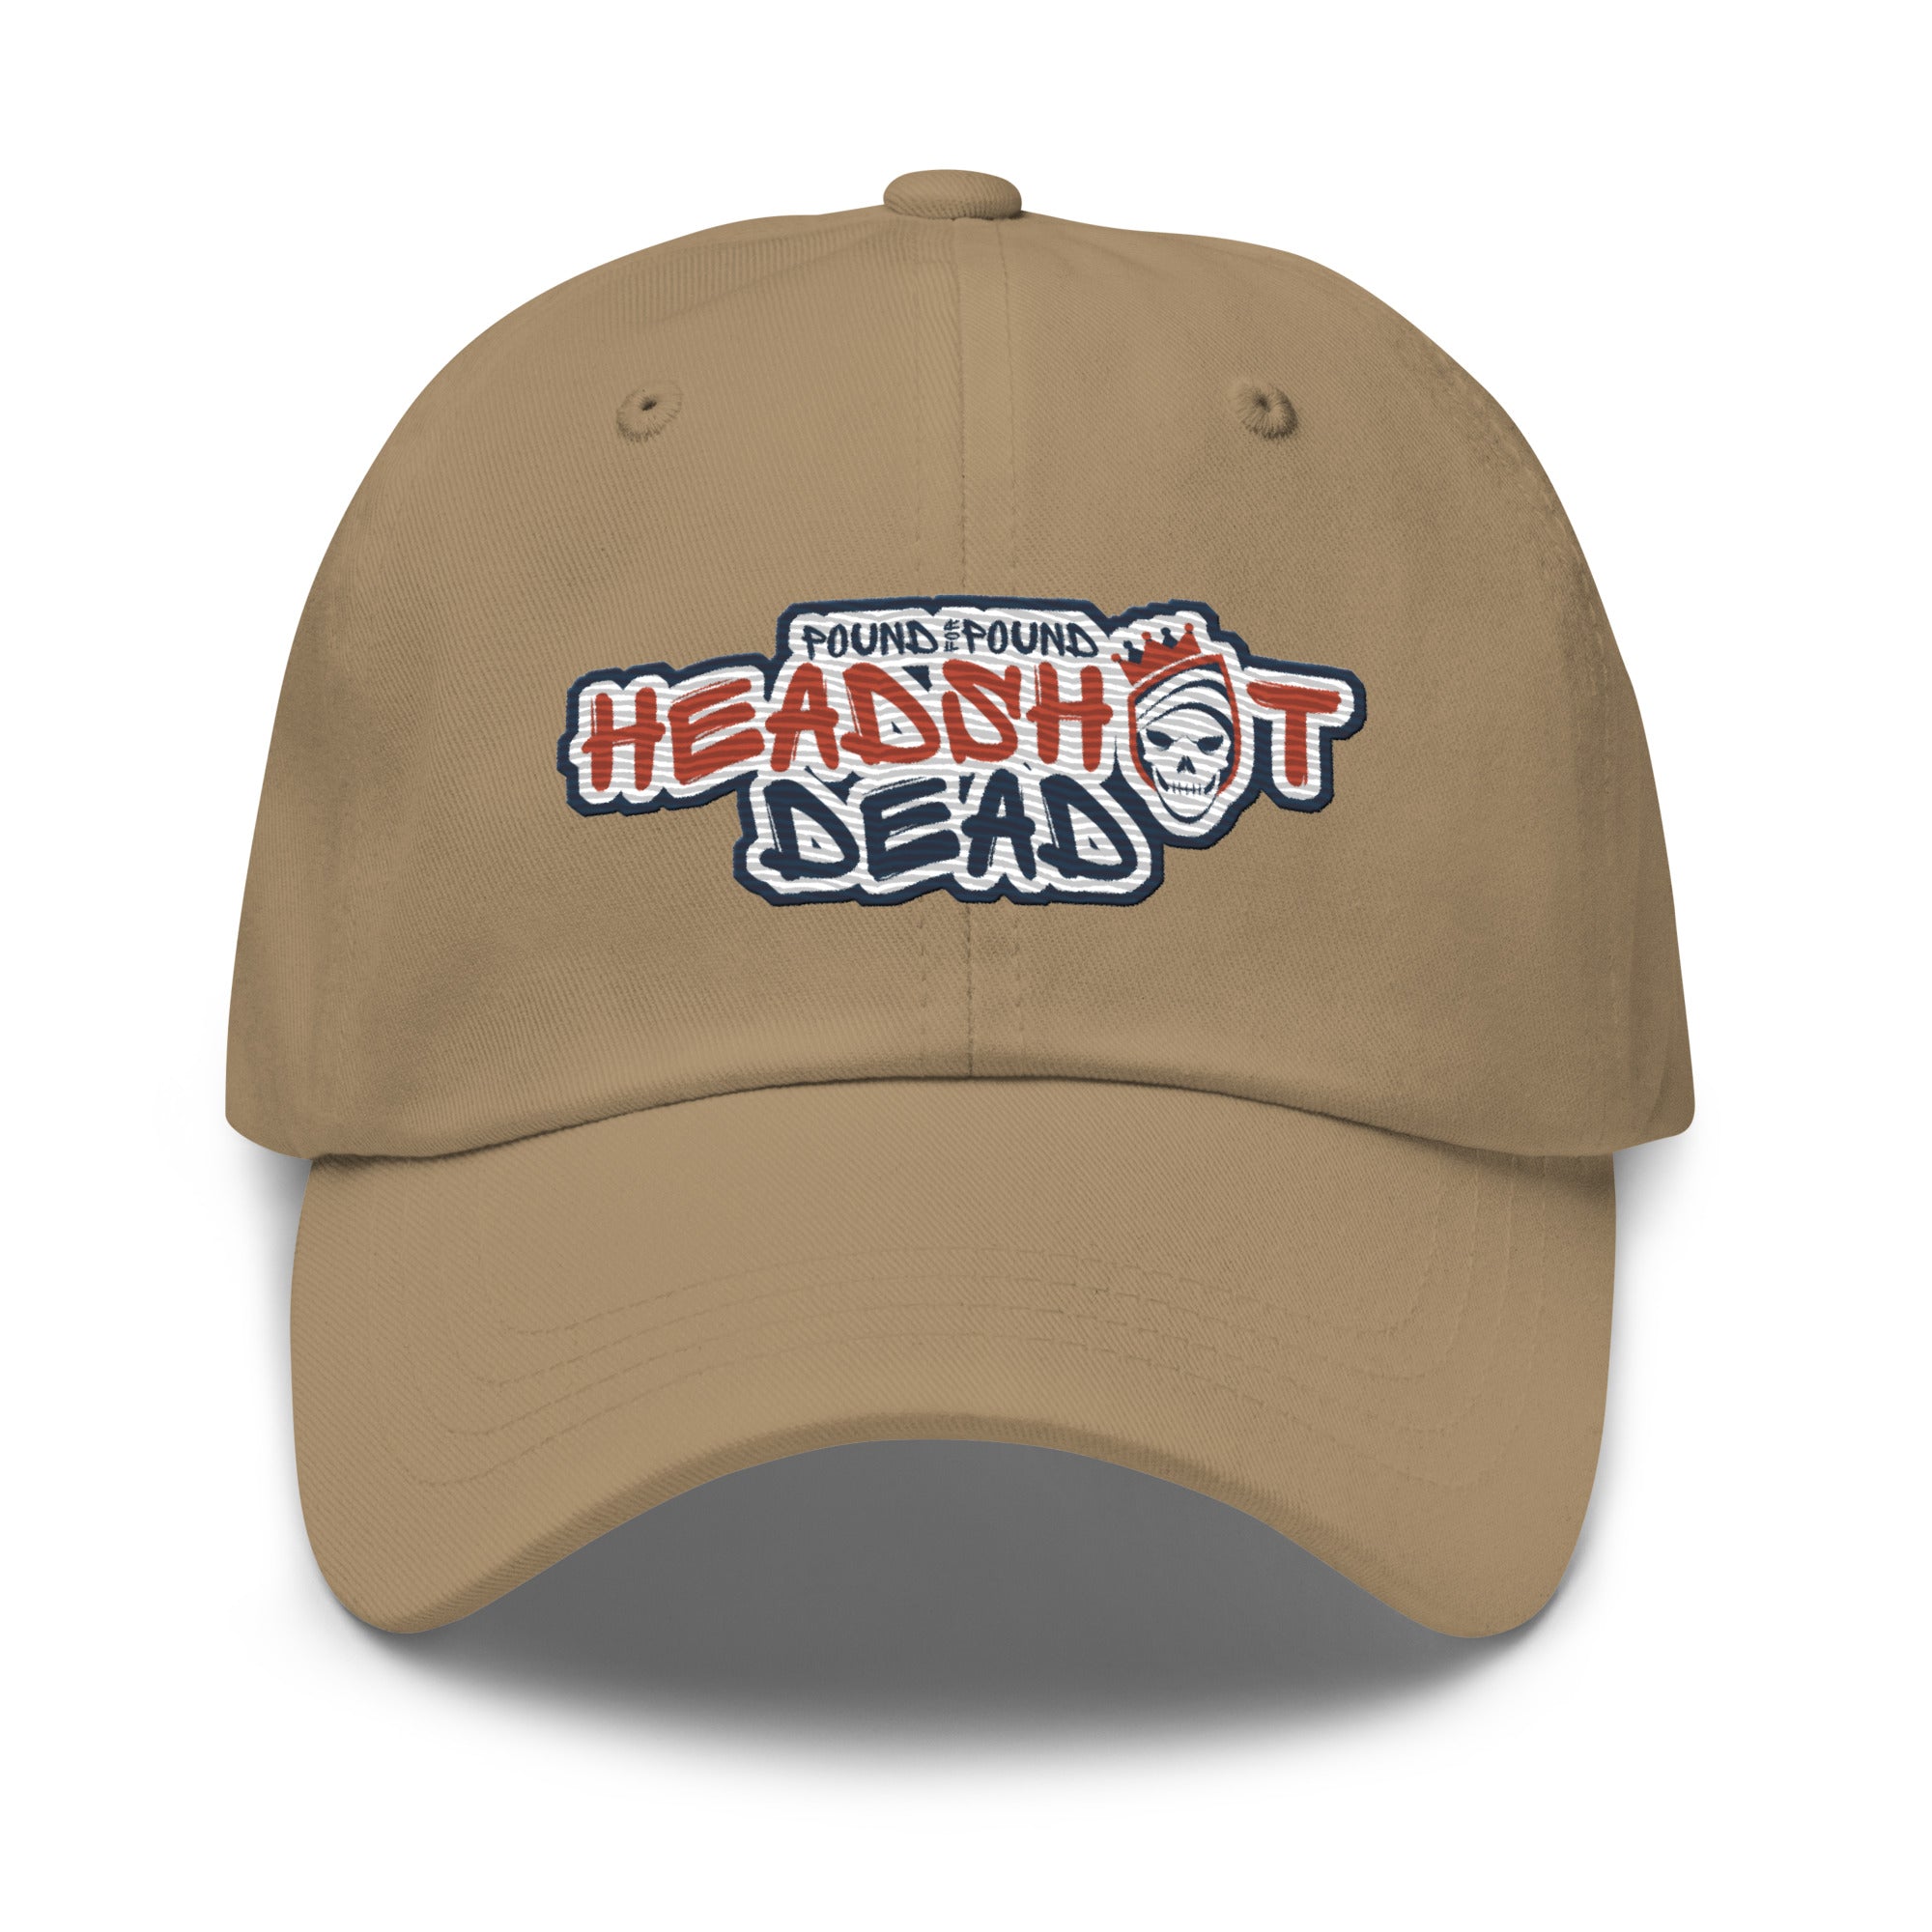 Pound for Pound, Headshot Dead! Premium Embroidered Hat